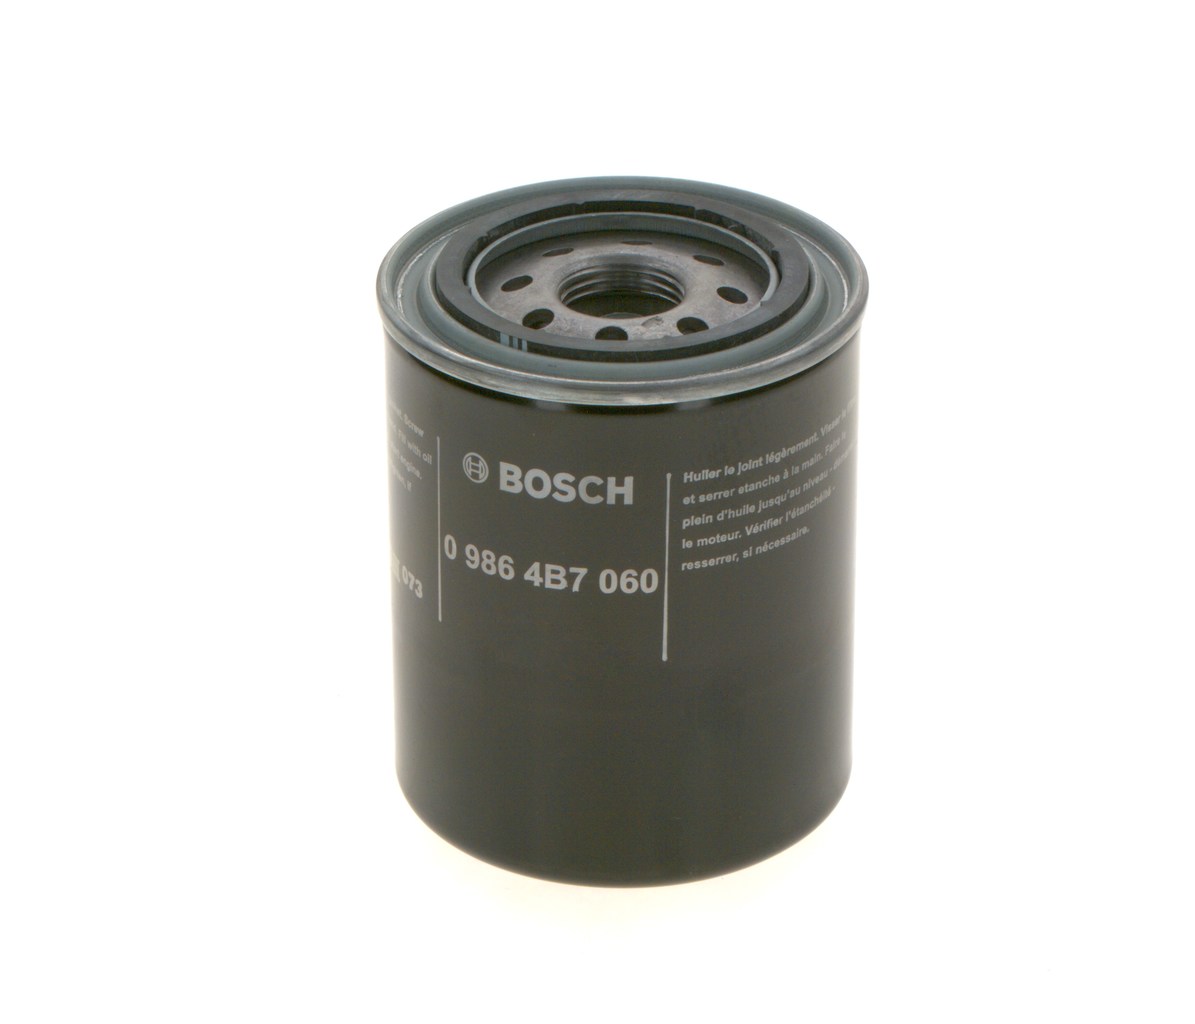 BOSCH 0 986 4B7 060 Oil filter 1